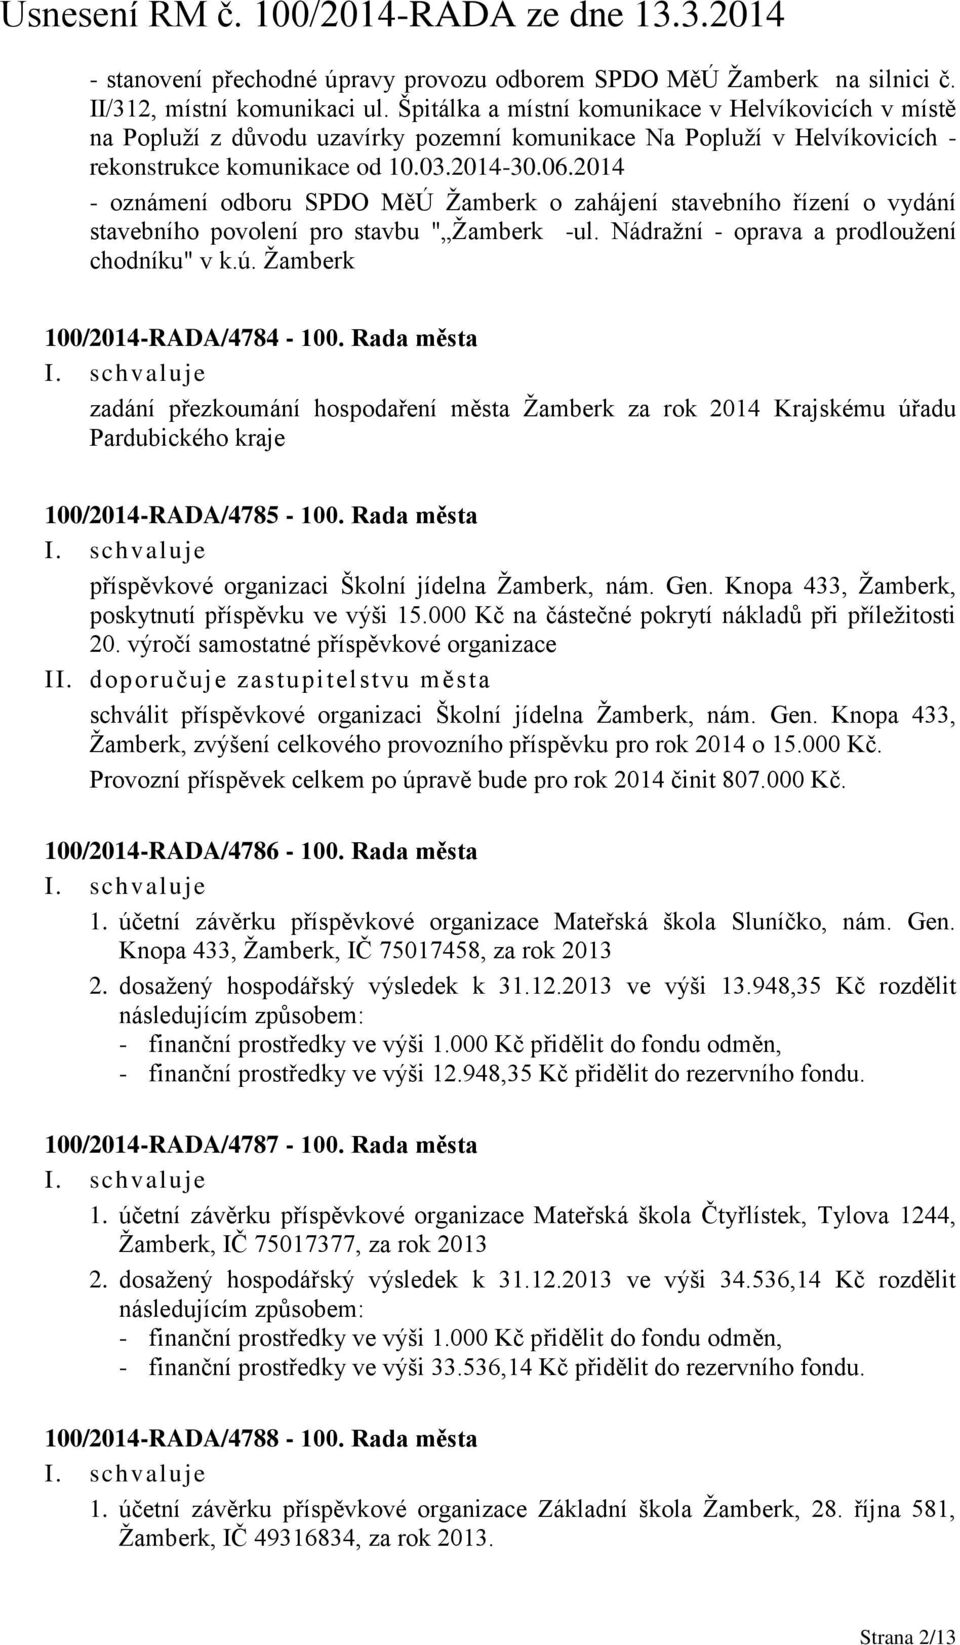 2014 - oznámení odboru SPDO MěÚ Žamberk o zahájení stavebního řízení o vydání stavebního povolení pro stavbu " Žamberk -ul. Nádražní - oprava a prodloužení chodníku" v k.ú.